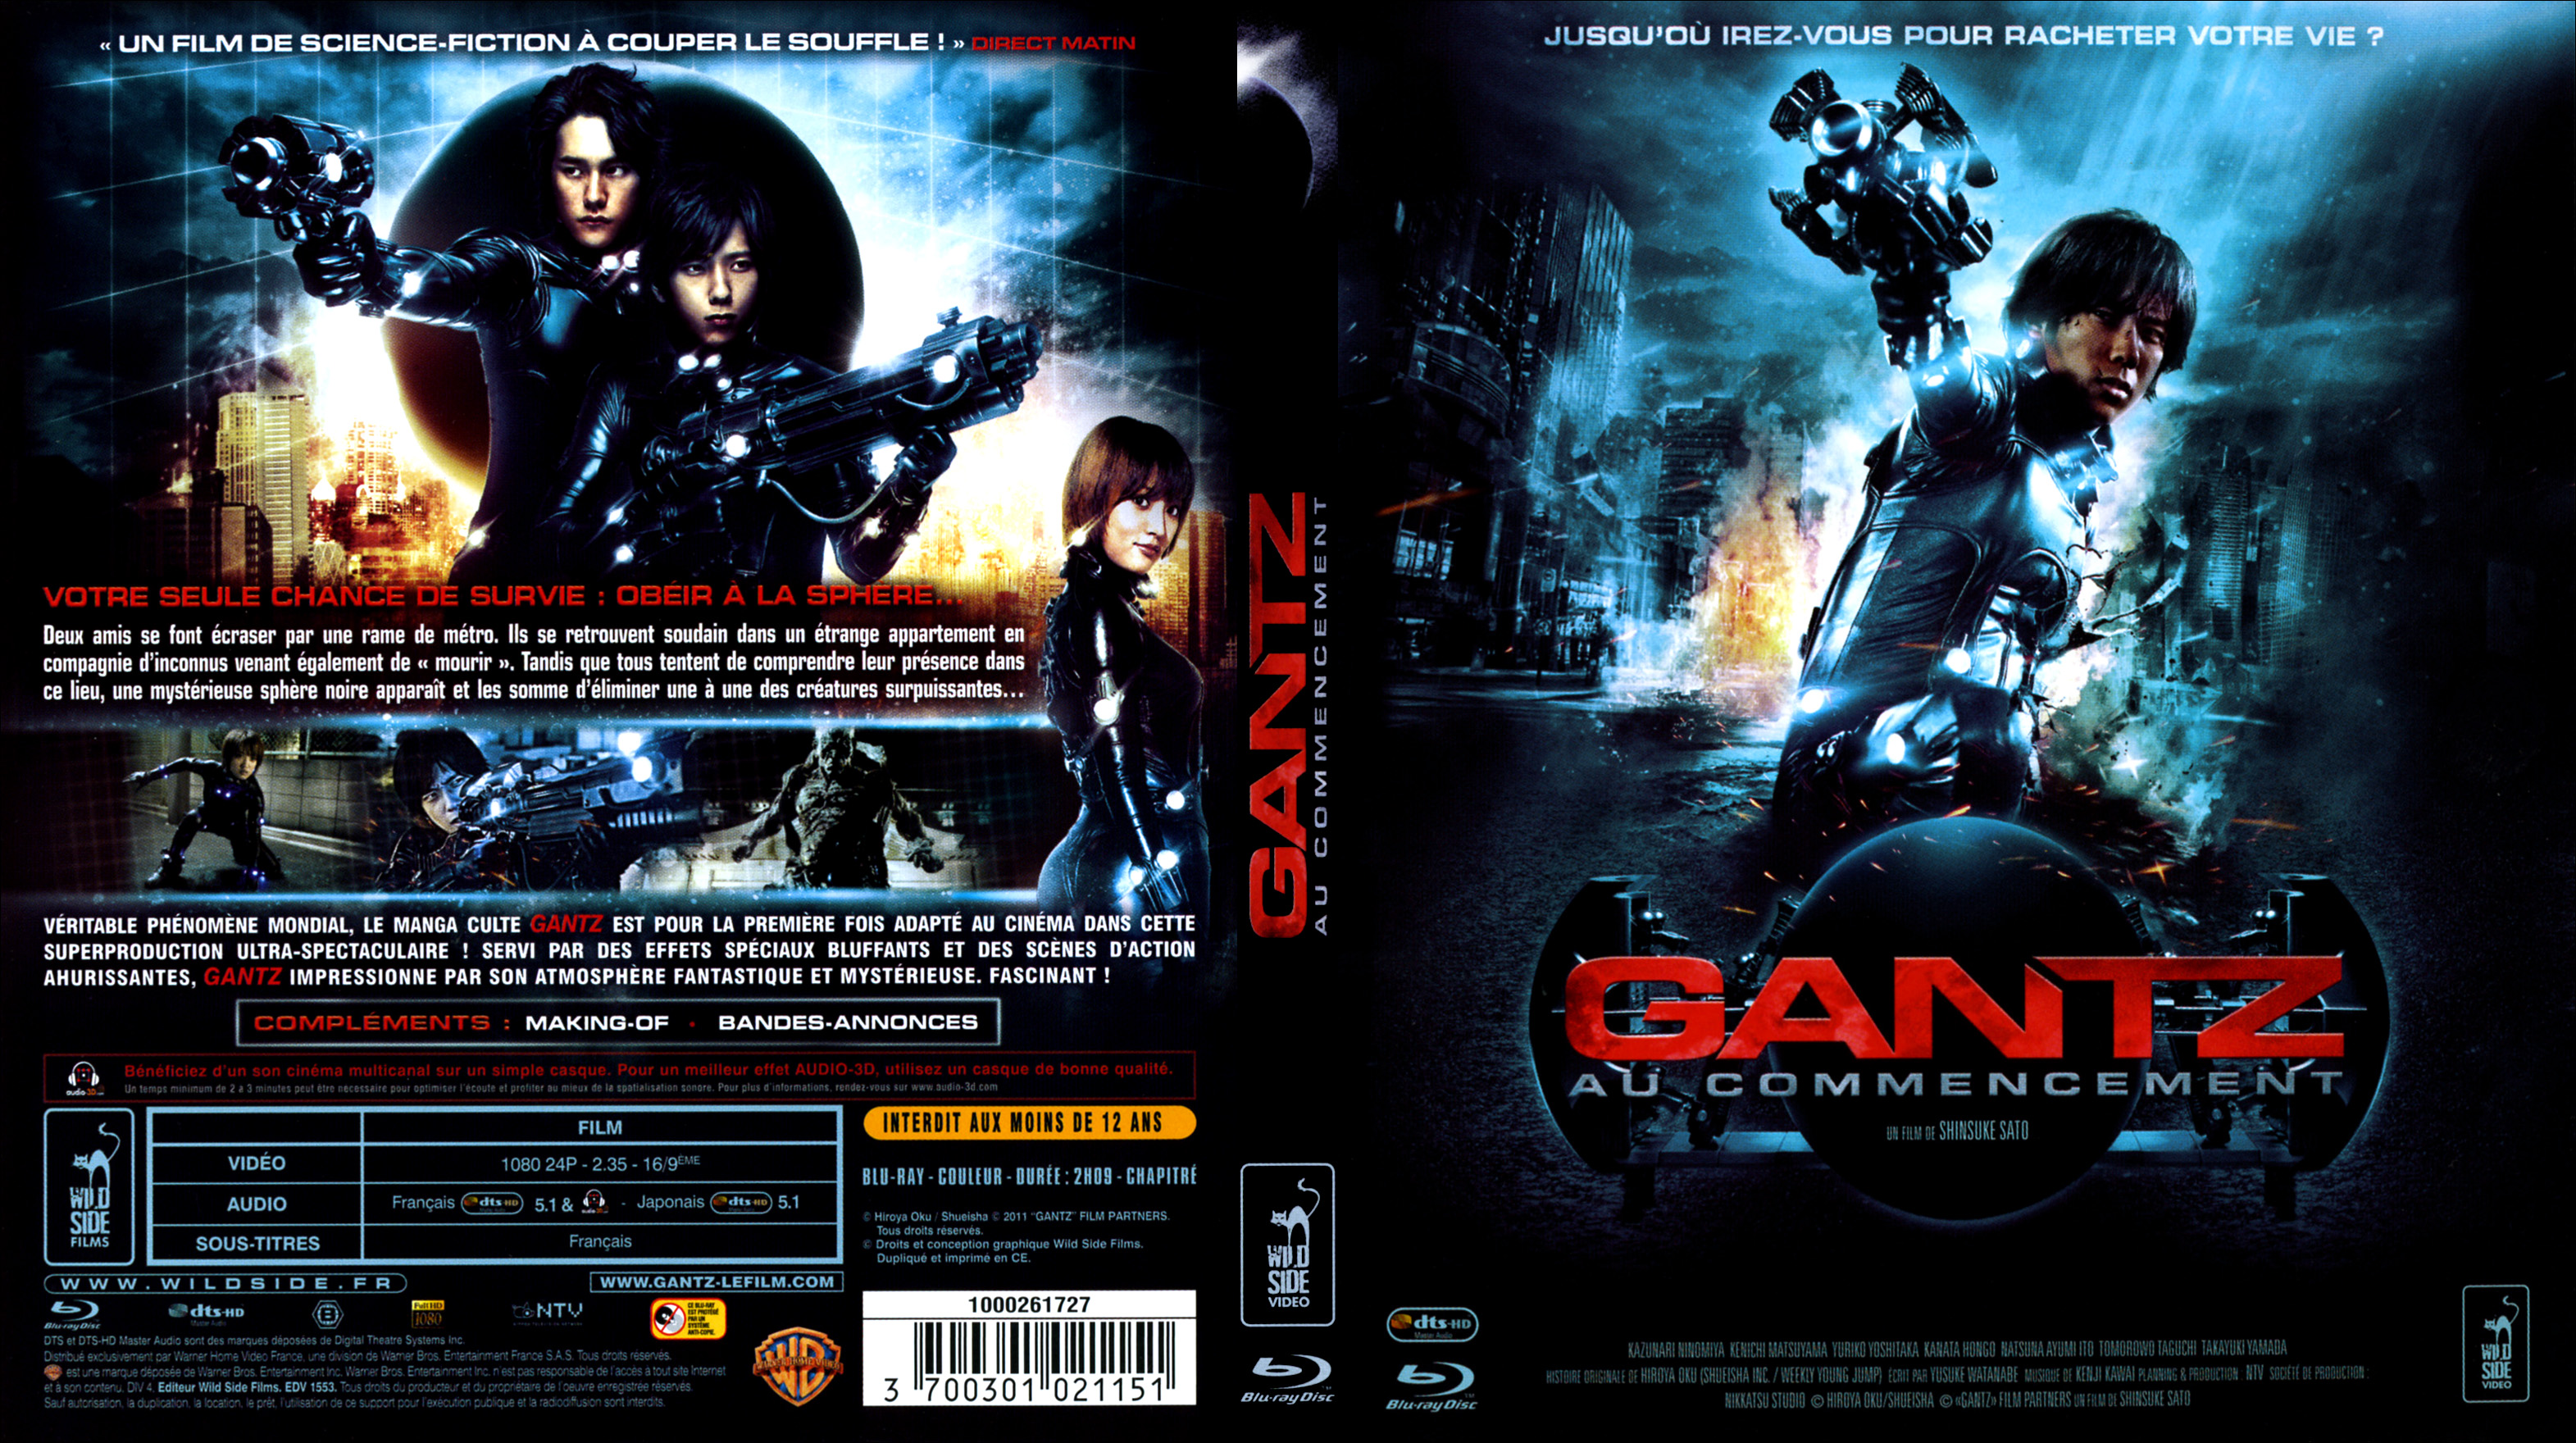 Jaquette DVD Gantz au commencement (BLU-RAY)